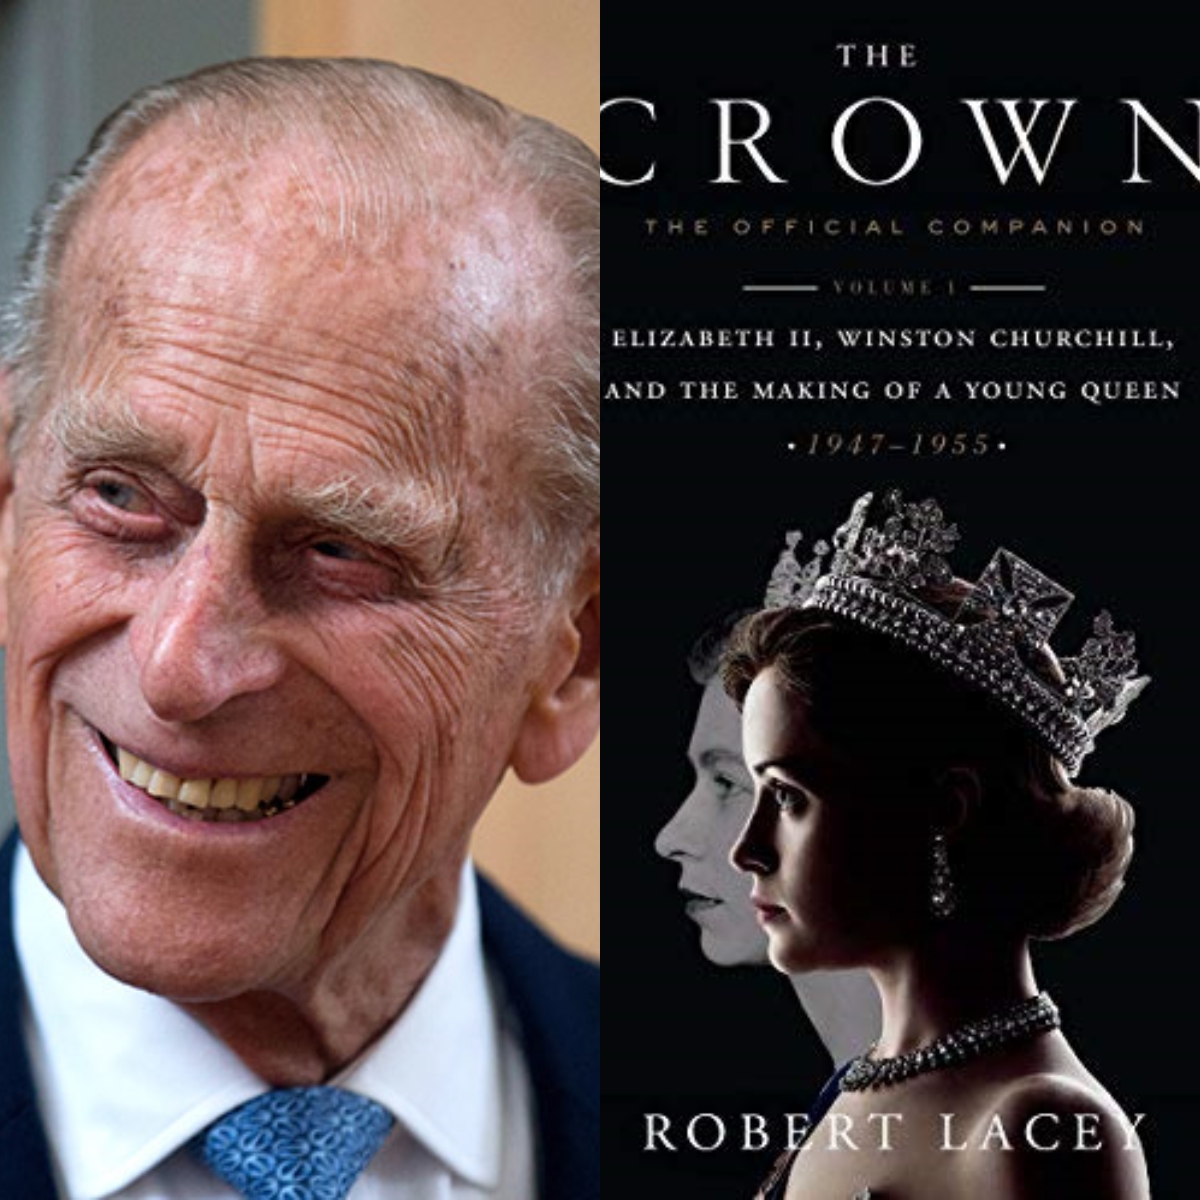 Le Prince Philip fan de la série The Crown ? On a la réponse !